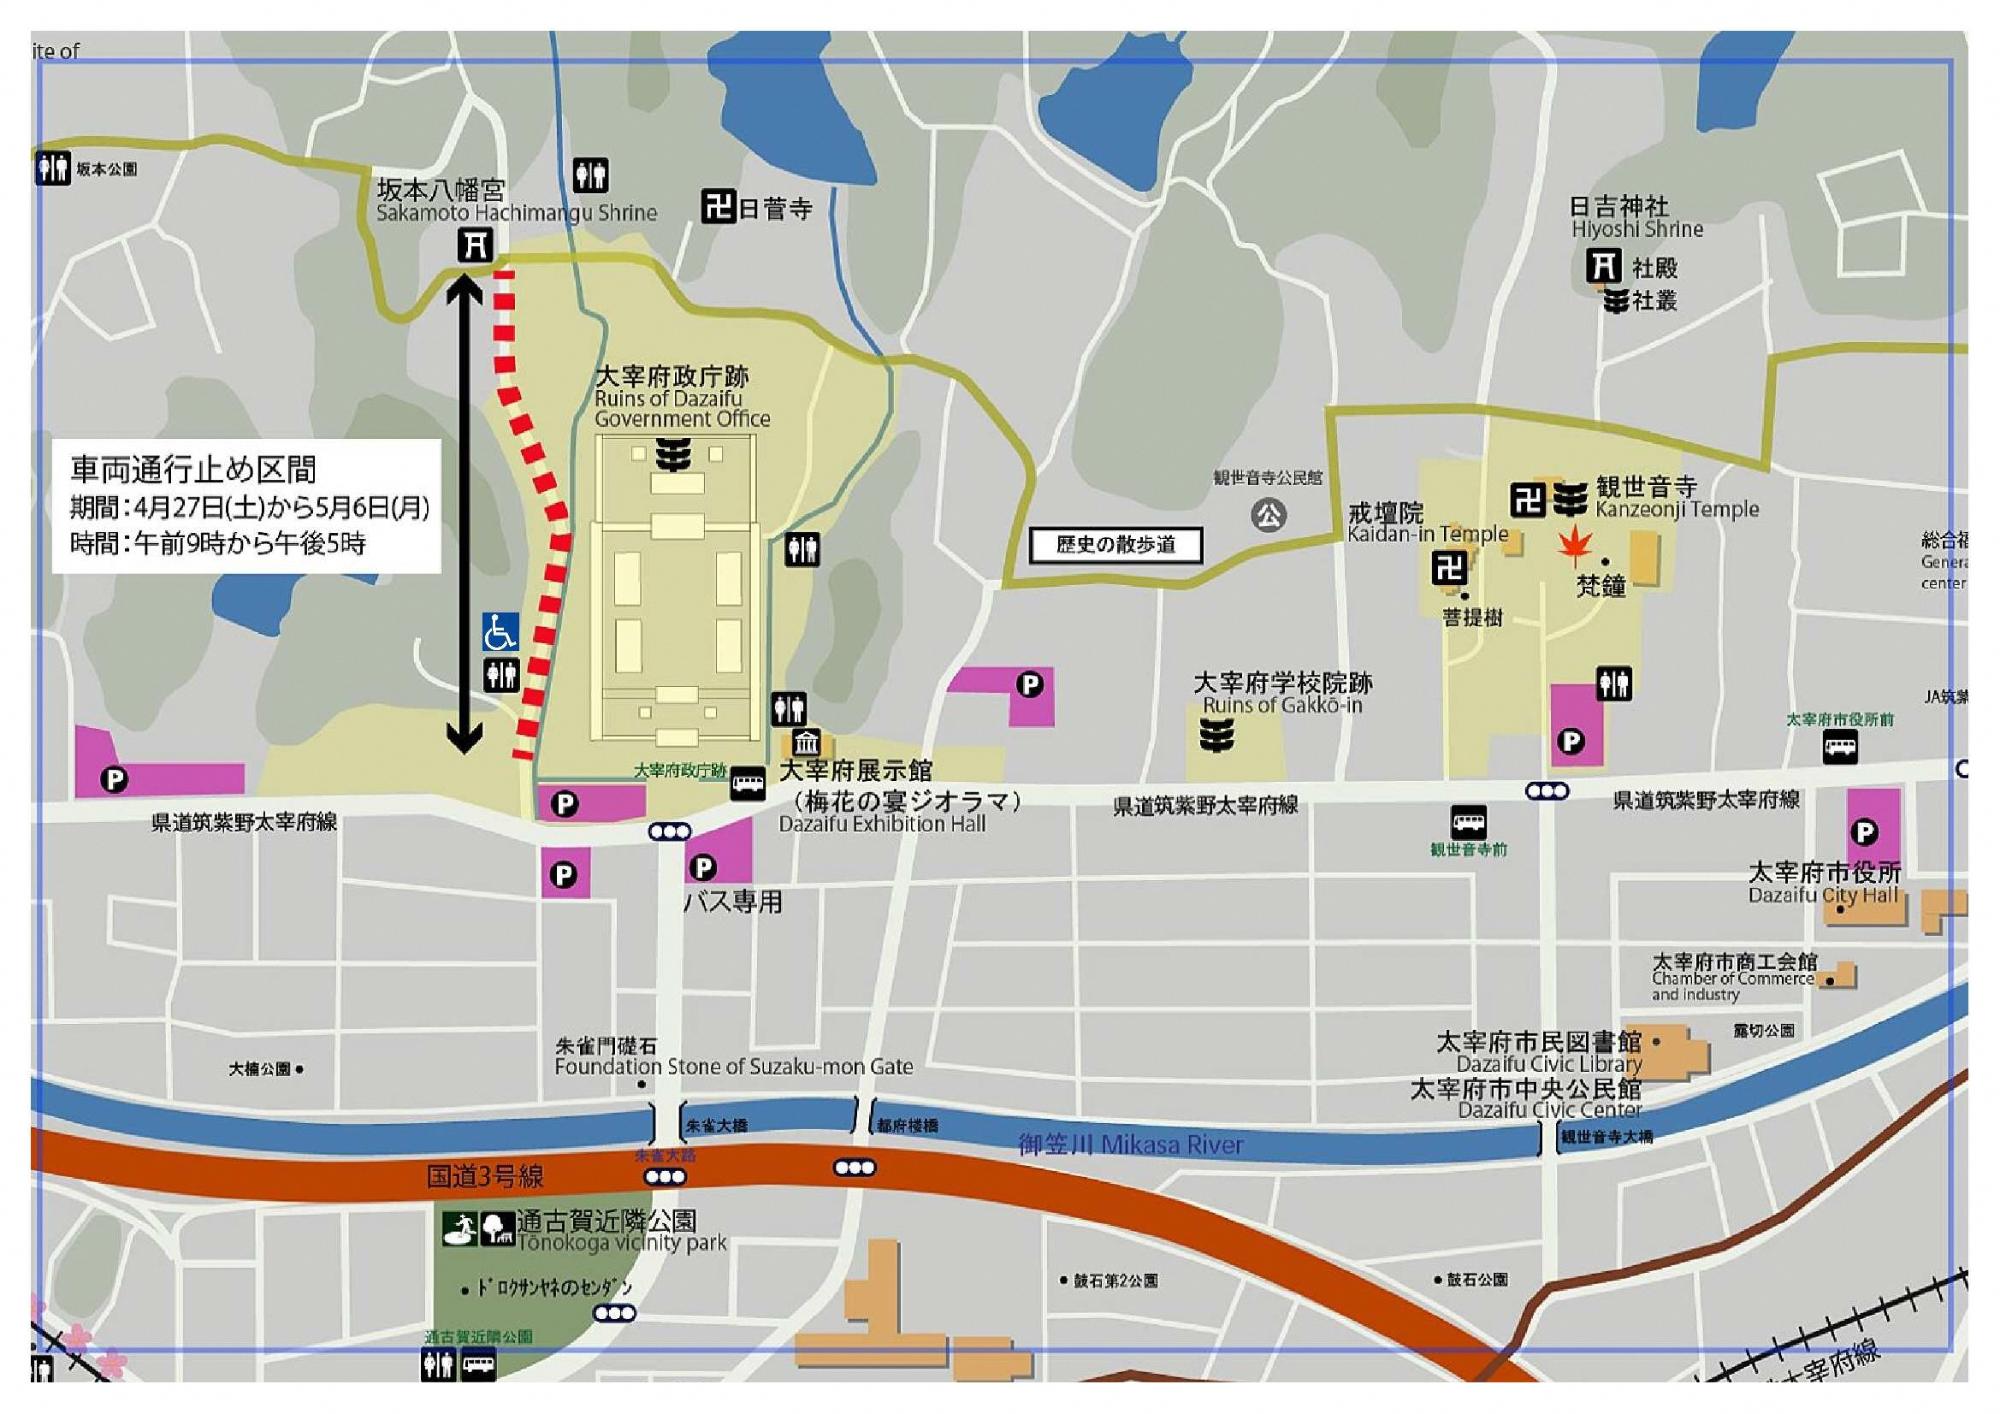 坂本八幡宮の駐車場マップと交通規制